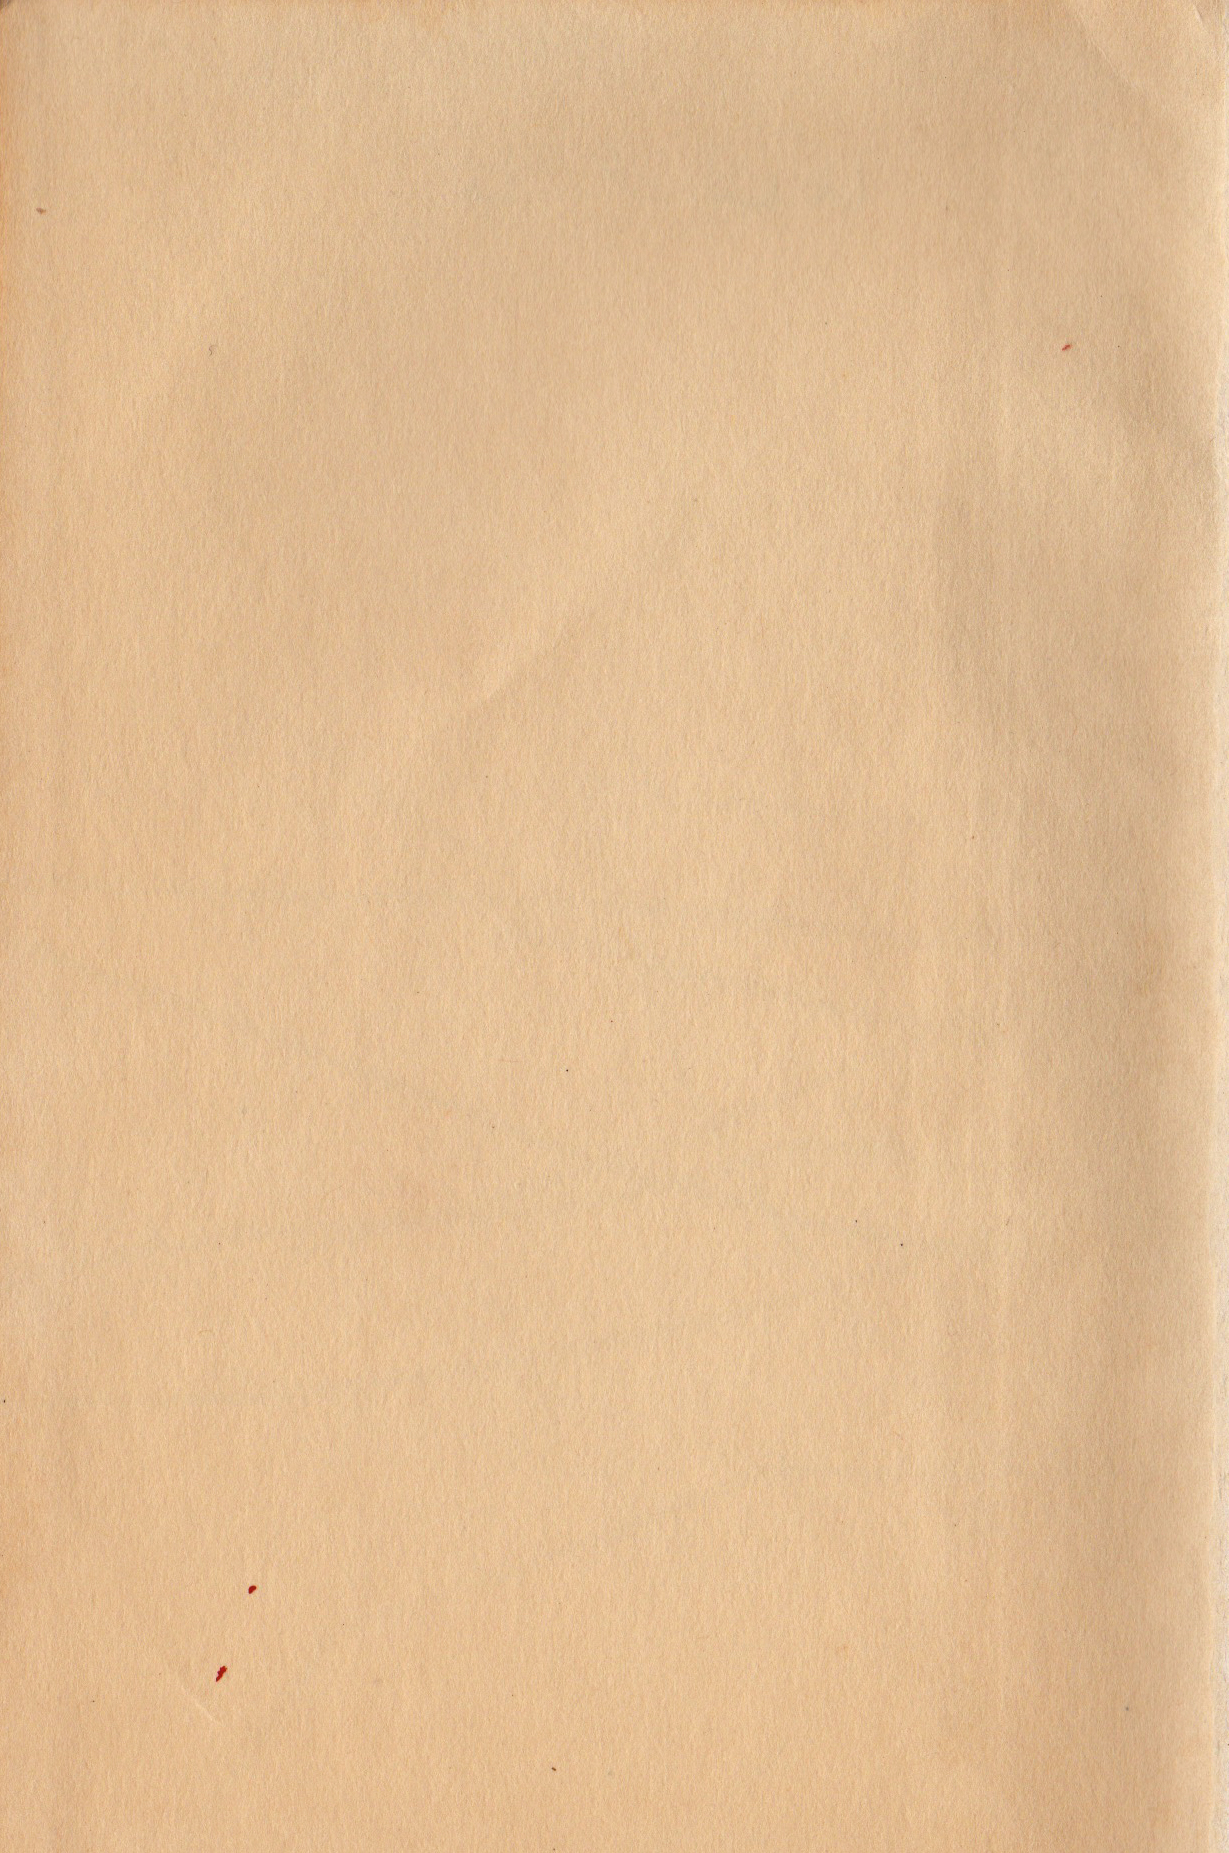 Vintage paper texture photo